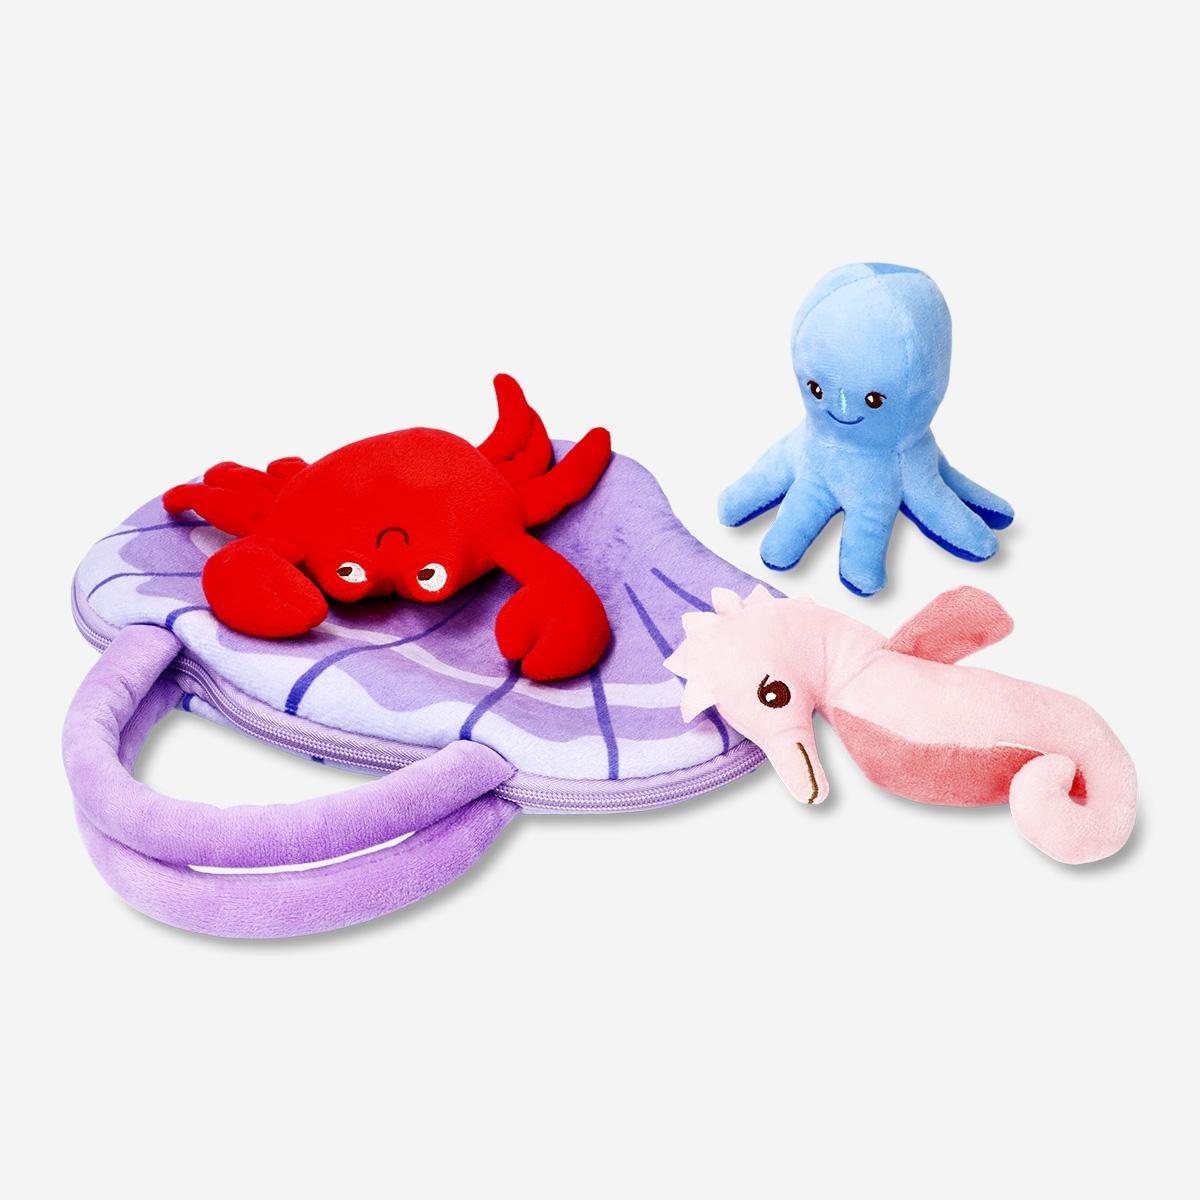 Multicolour cuddly sea animals